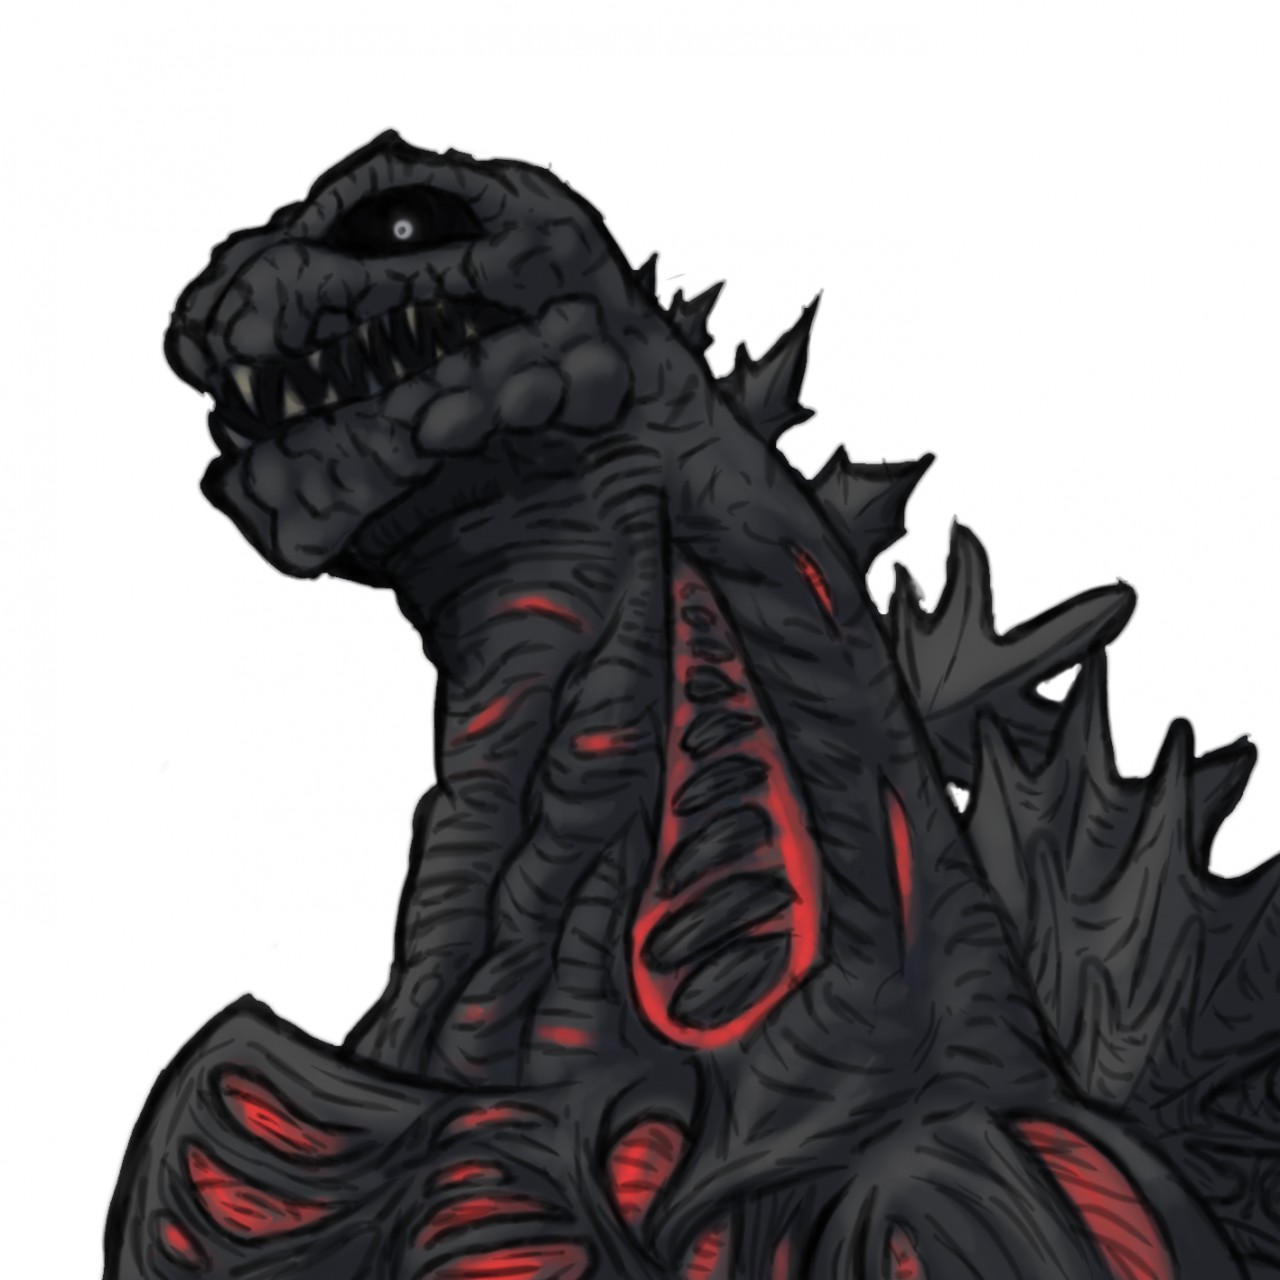 Shin Godzilla Drawing by GojifanDA on DeviantArt